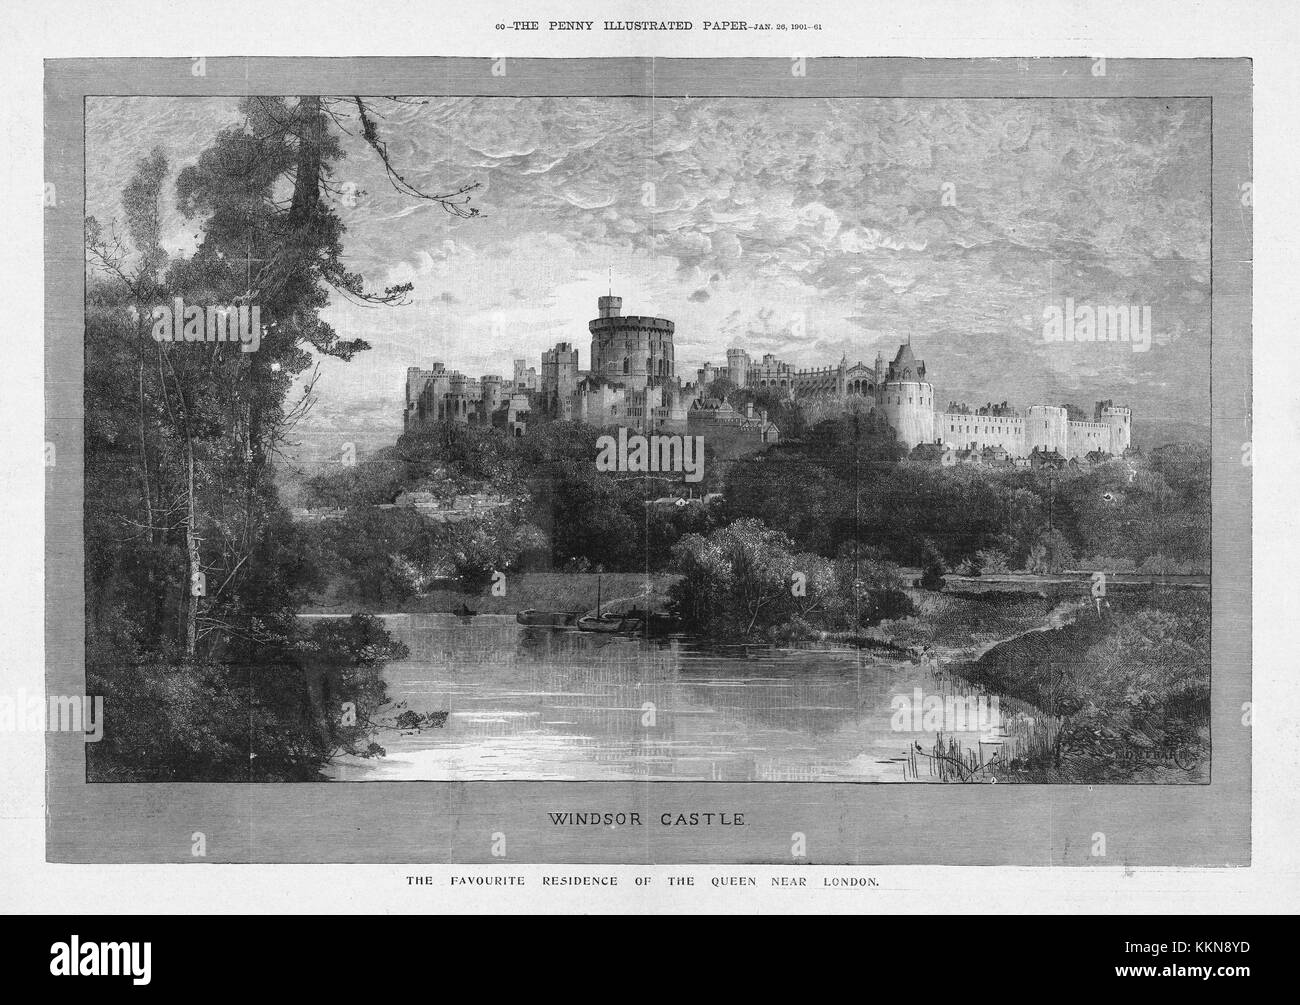 1901 Penny Carta illustrato il Castello di Windsor, Queen Victoria la residenza preferita Foto Stock